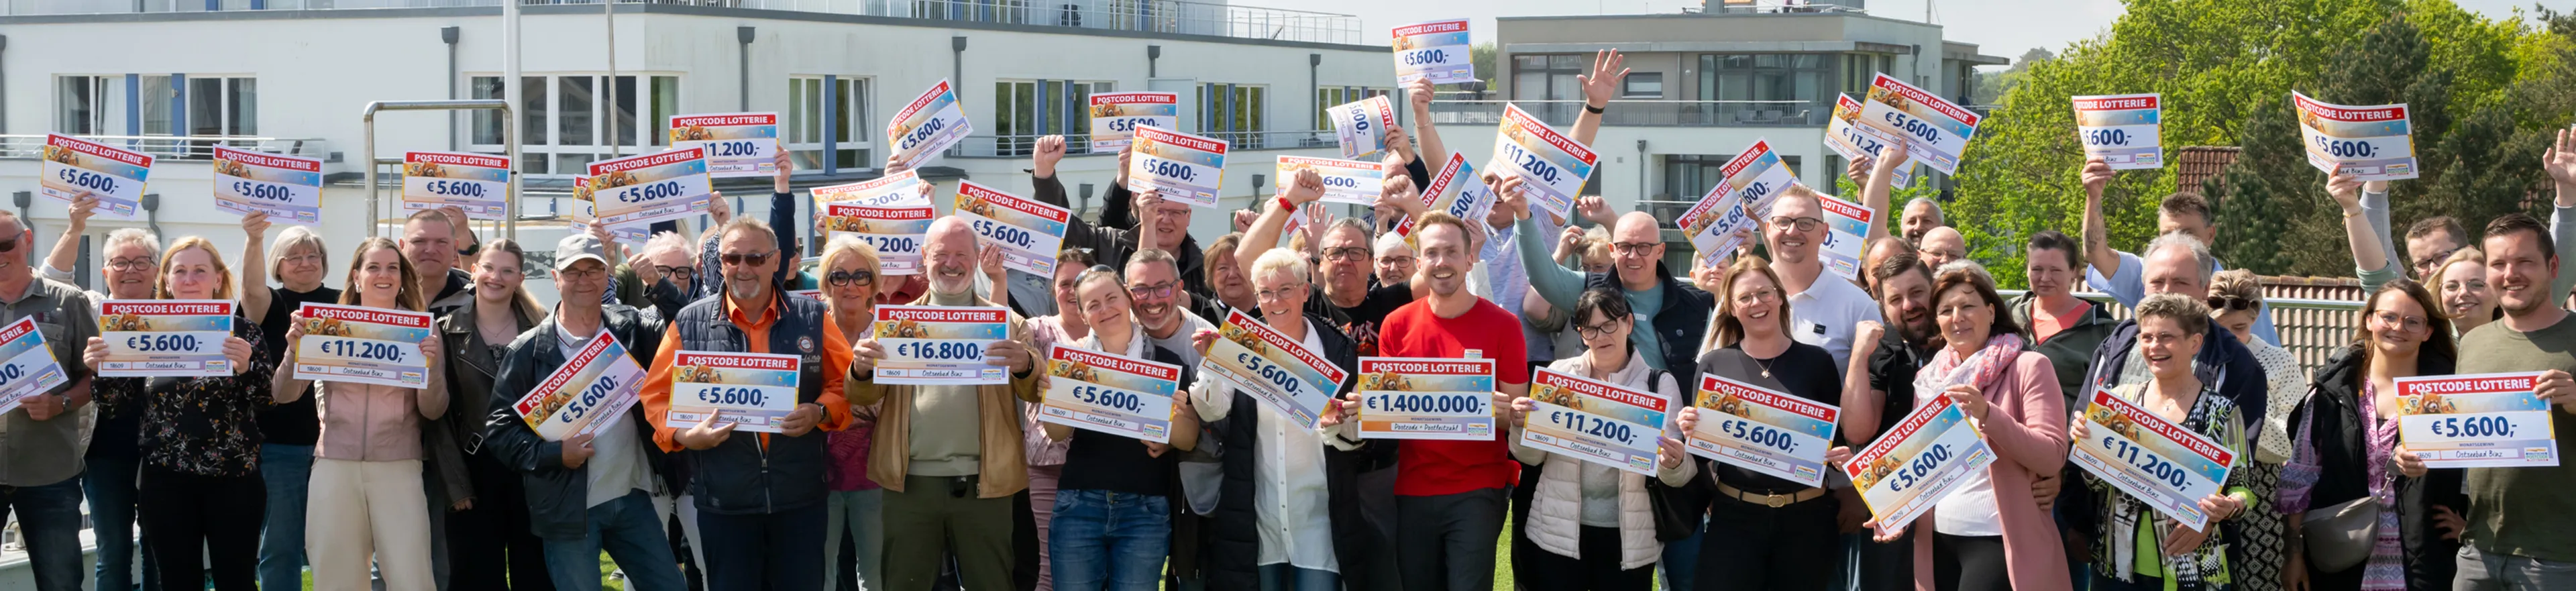 Die Monatsgewinner der Deutschen Postcode Lotterie freut sich über 700.000 Euro